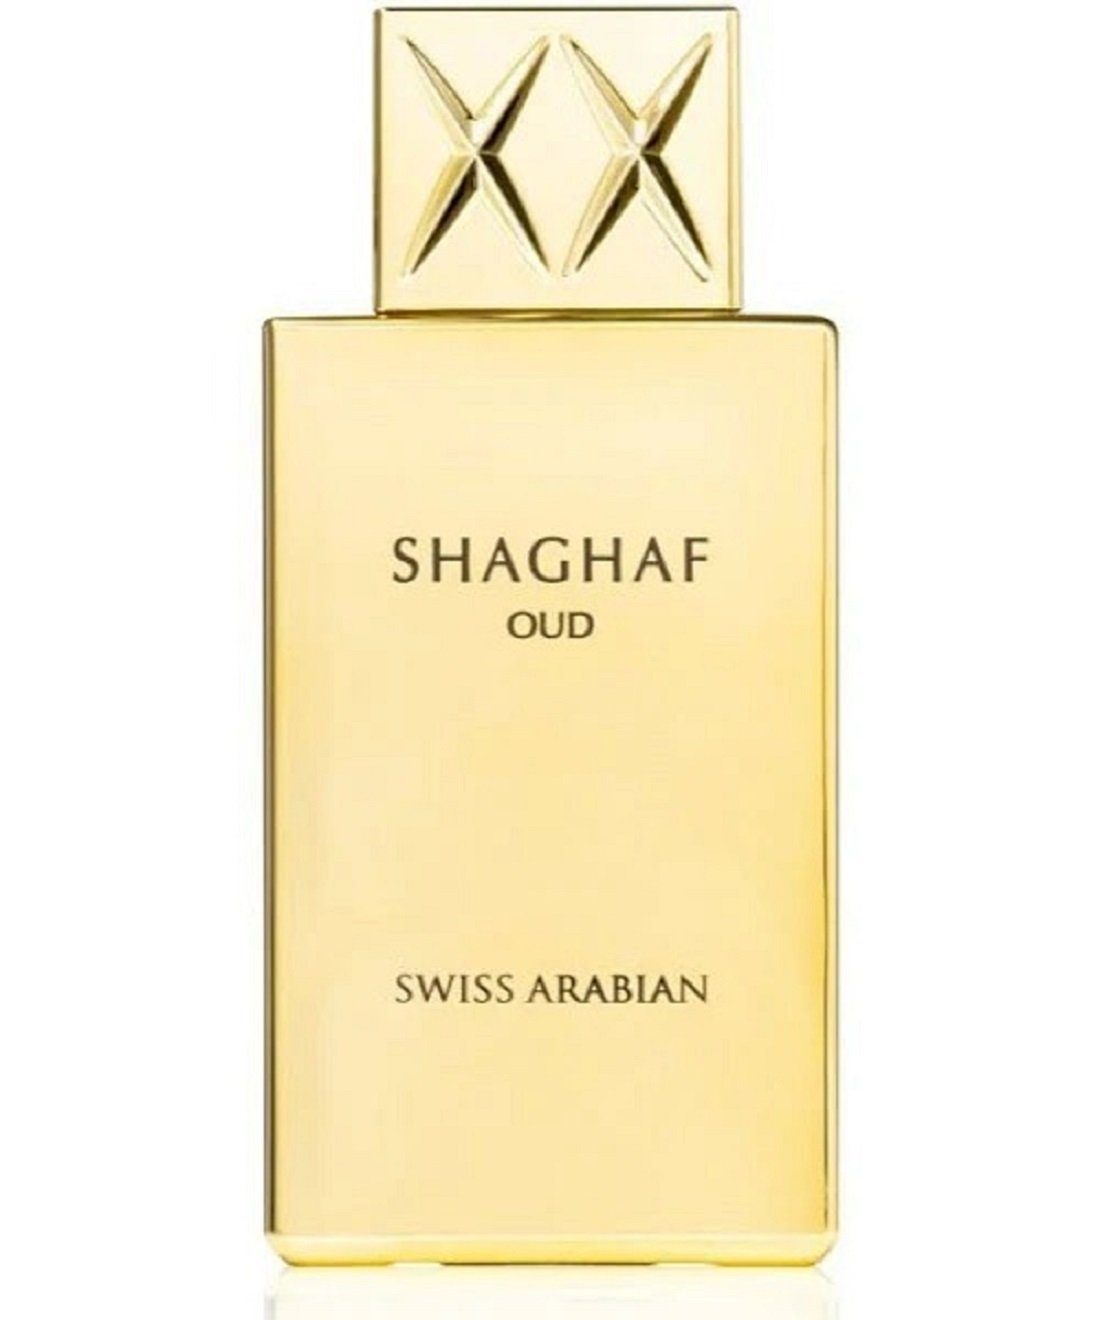 Swiss Arabian Eau de Parfum Shaghaf Oud 75ml - Refill unverpackt